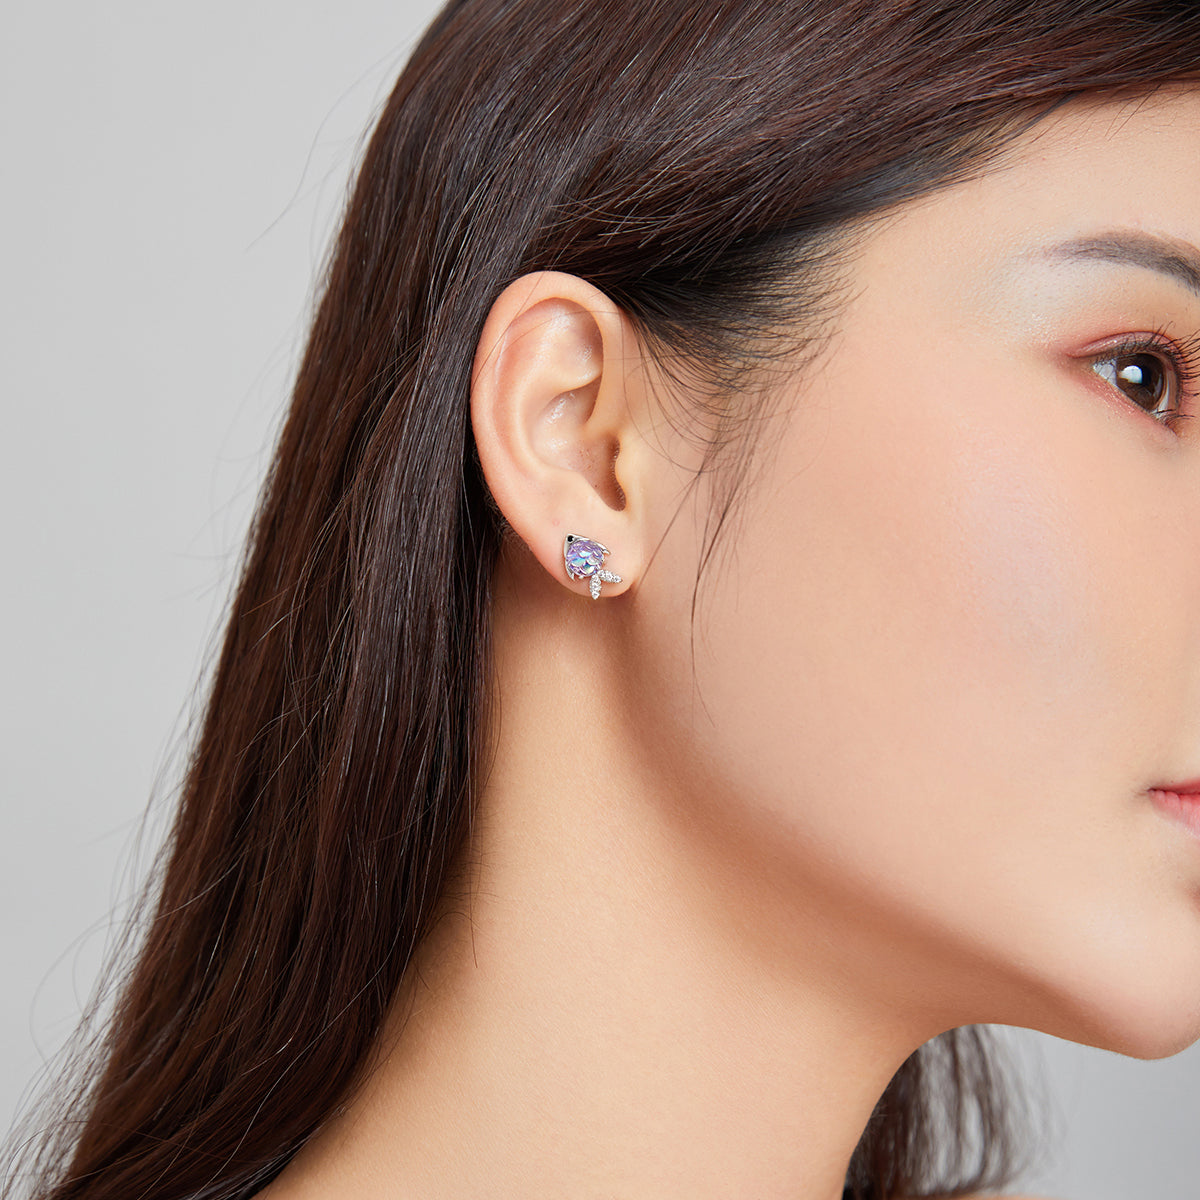 Fish earrings, 92.5% Sterling Silver, Zircon ear stud